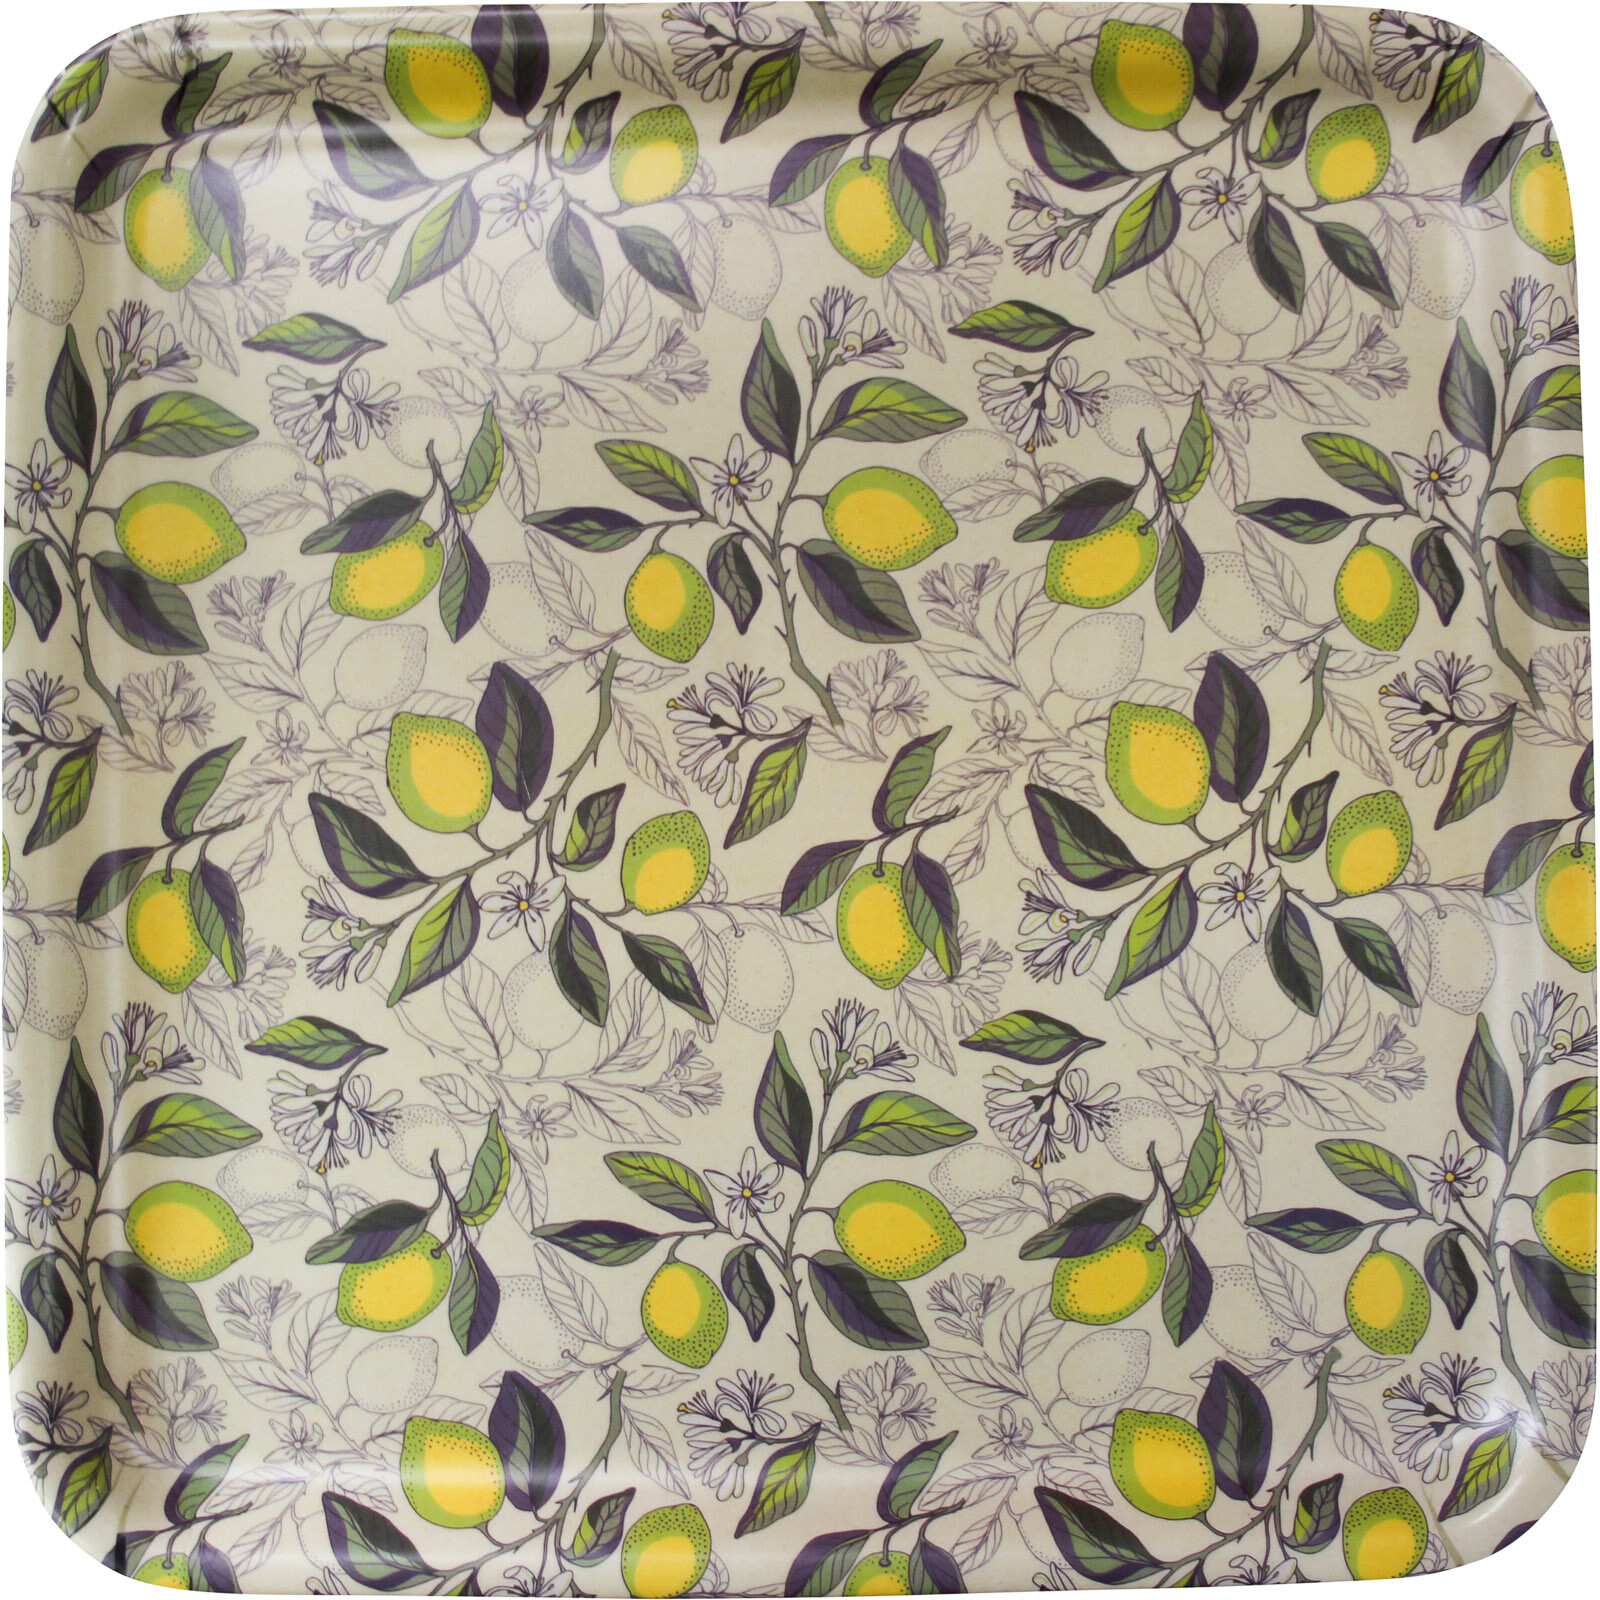 Tray Square Citron/Lemons